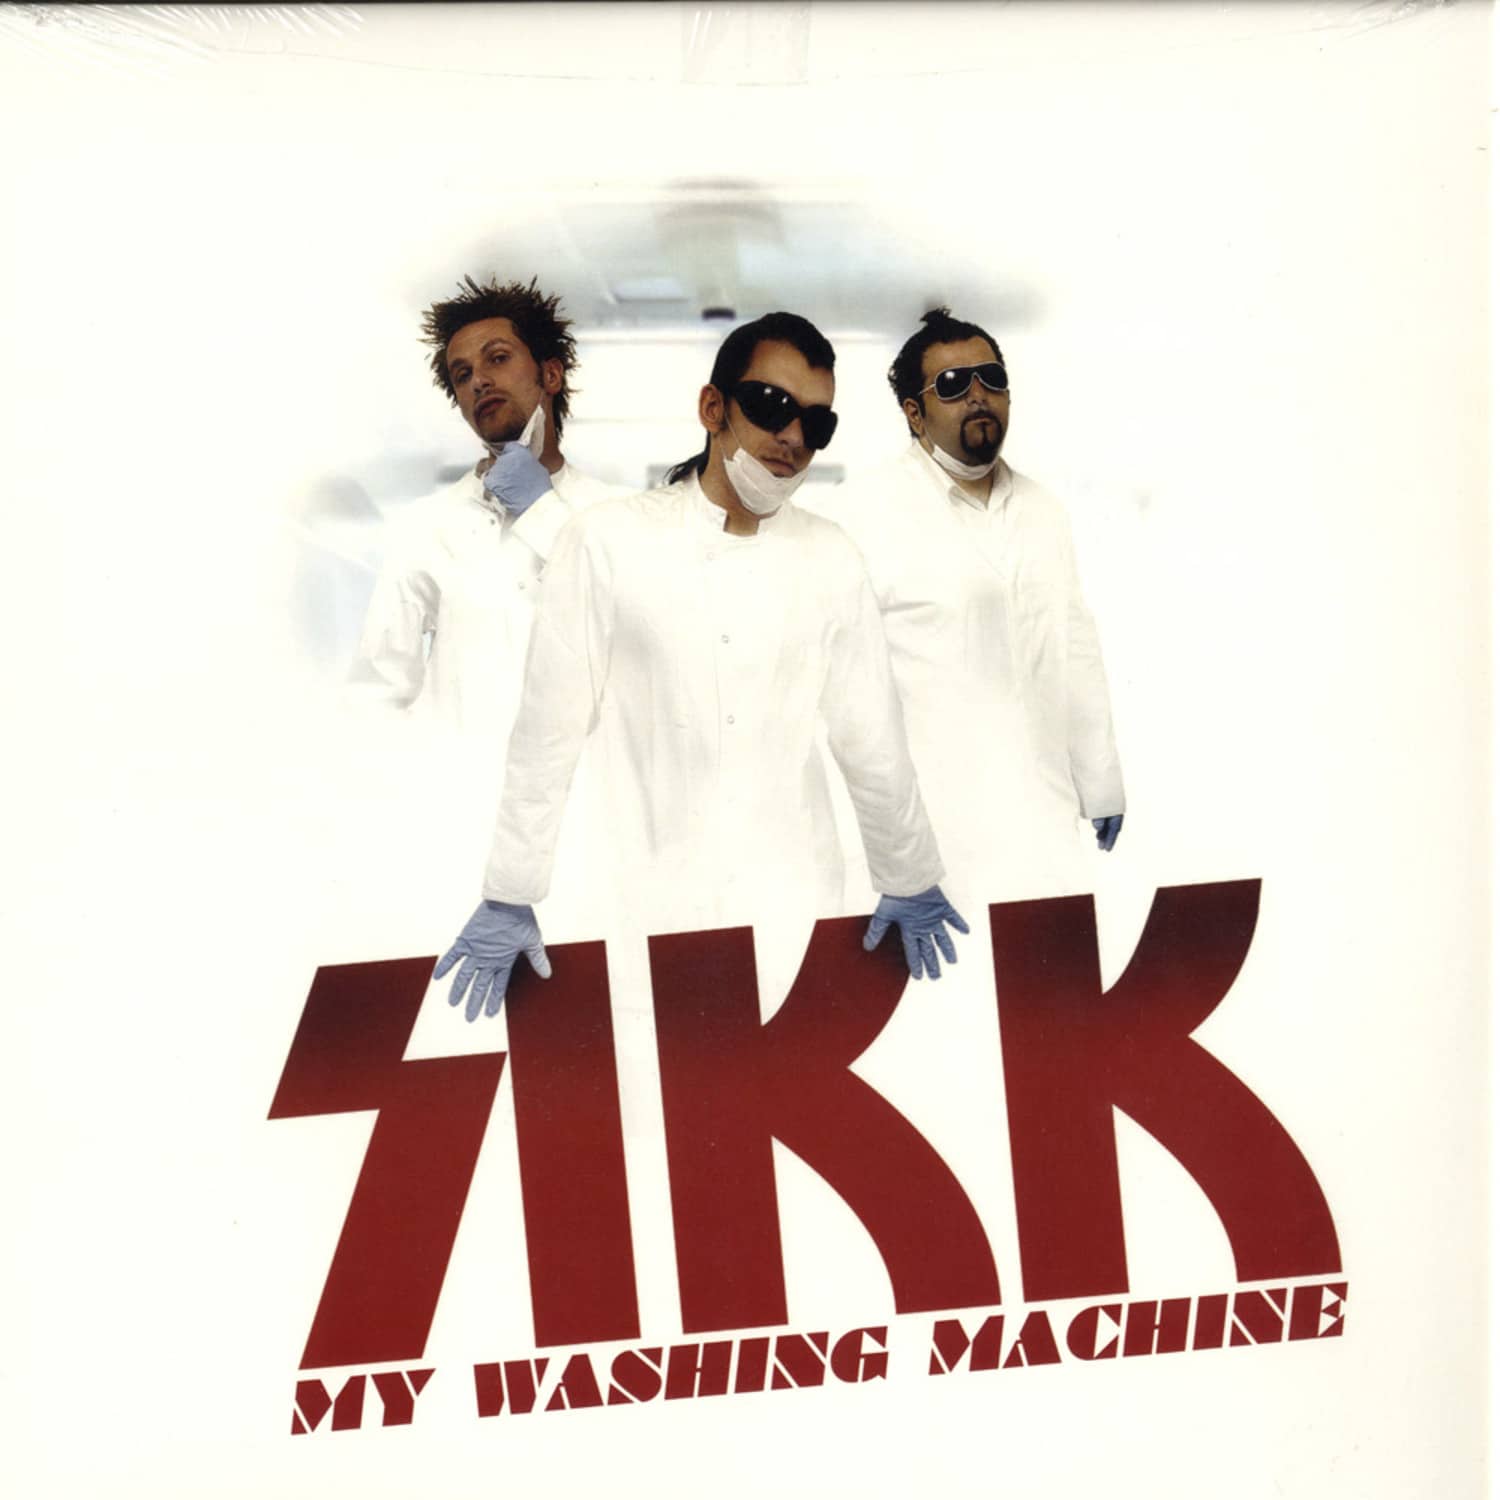 Sikk - MY WASHING MACHINE